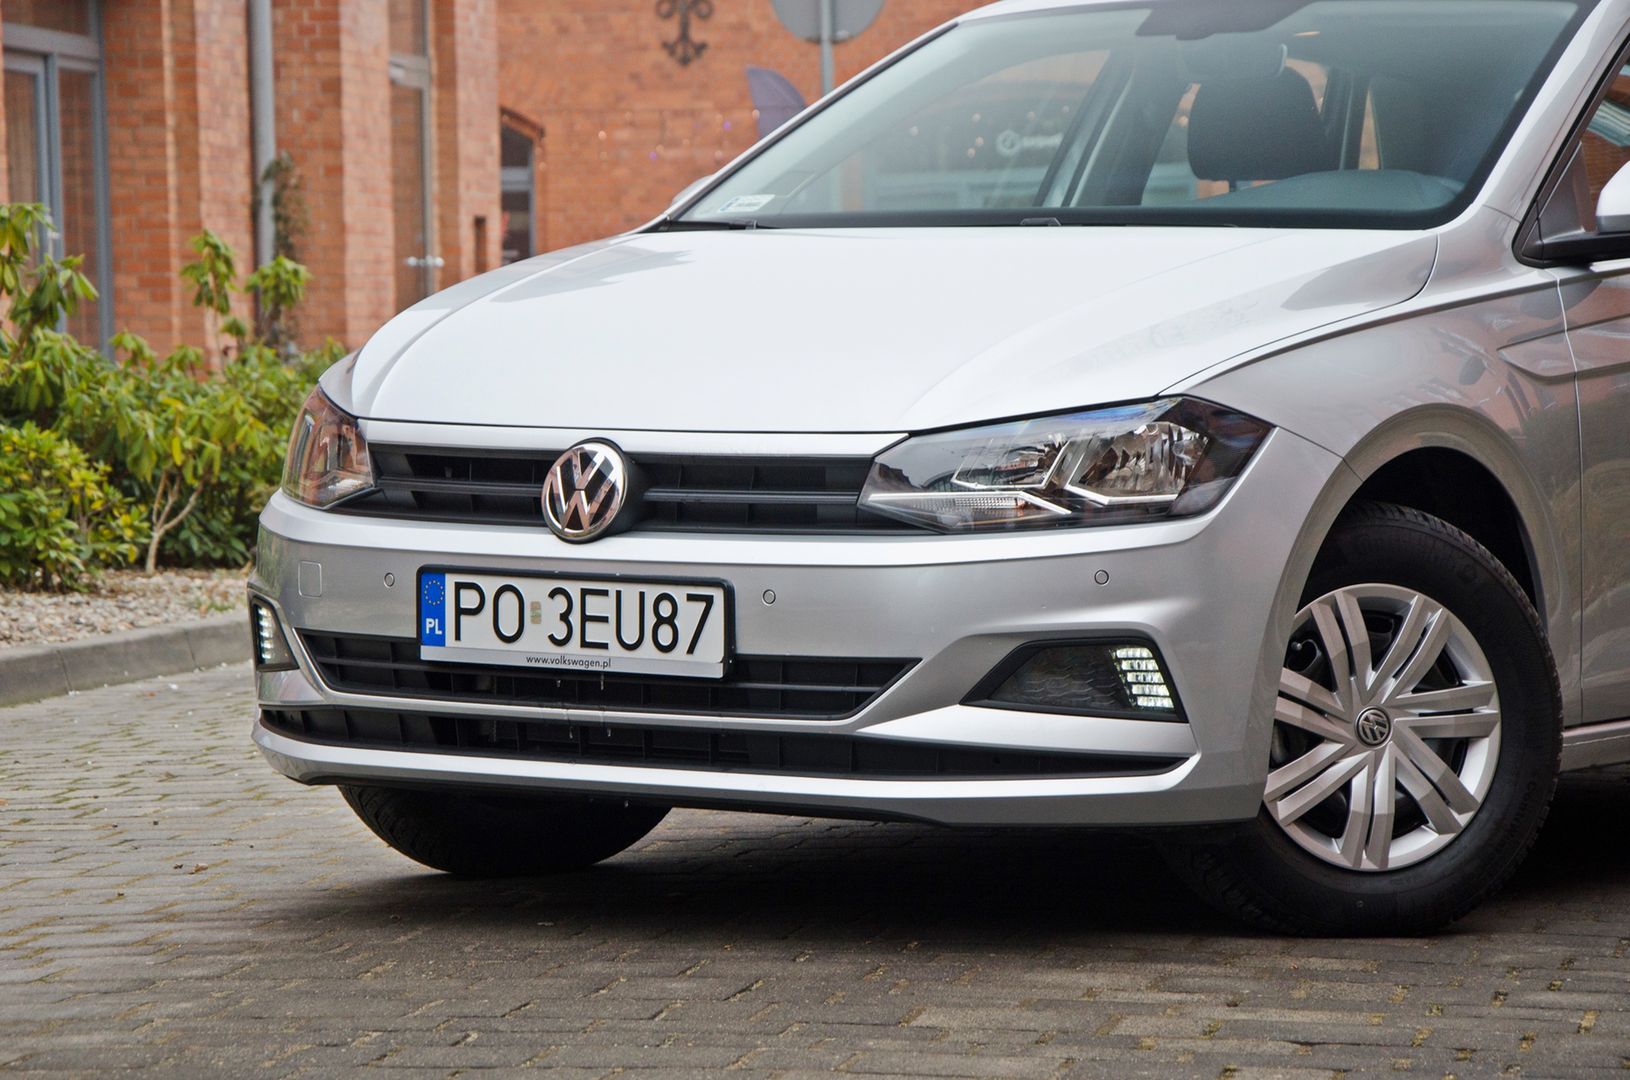 Nowy Volkswagen Polo robi wrażenie. Już w wersji